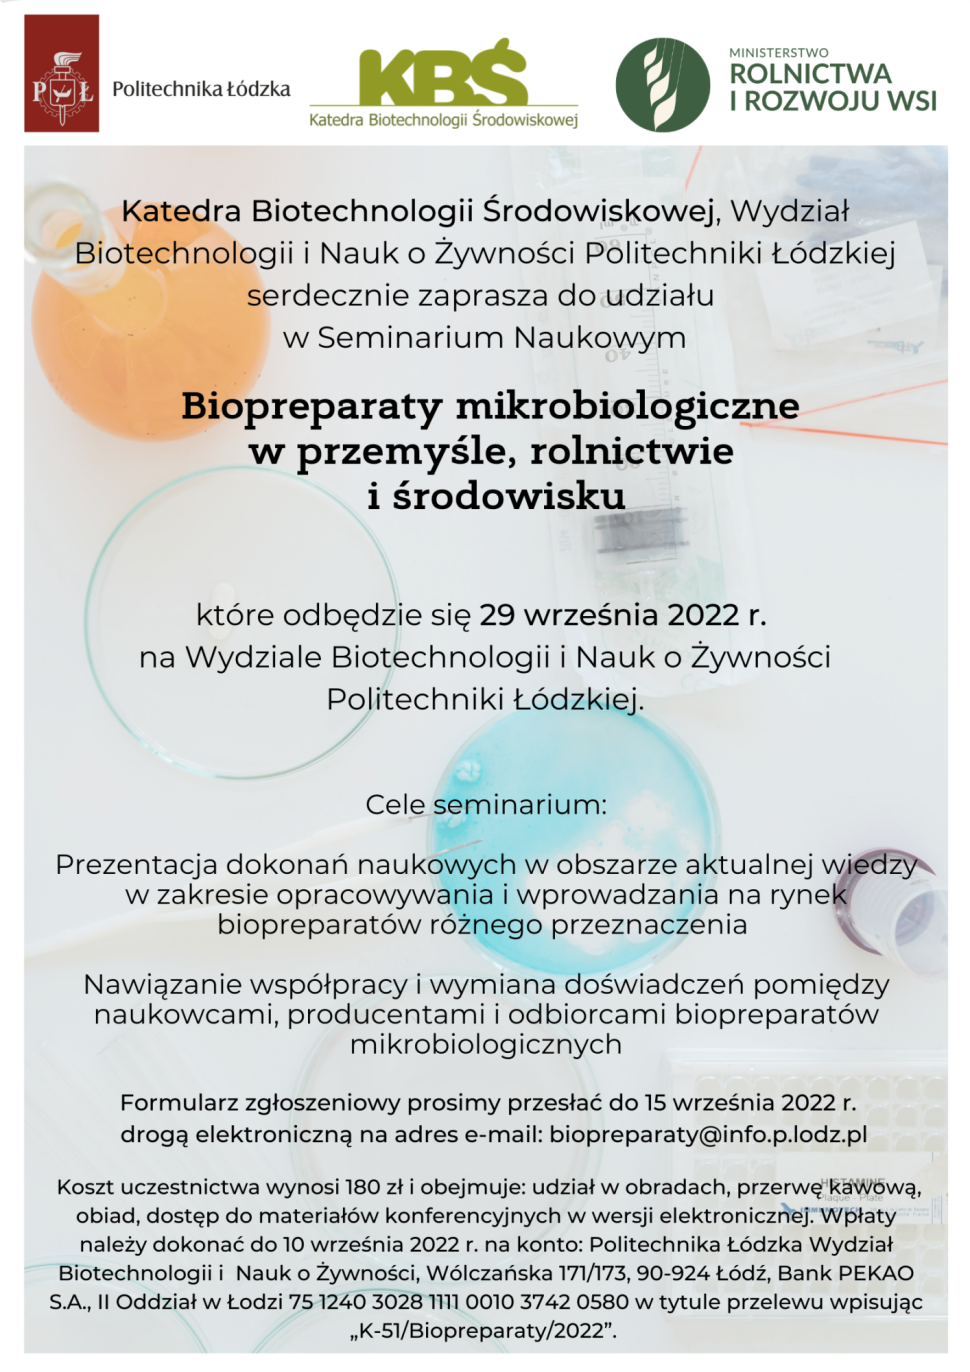 Seminarium Naukowe "Biopreparaty mikrobiologiczne w przemyśle, rolnictwie i środowisku”